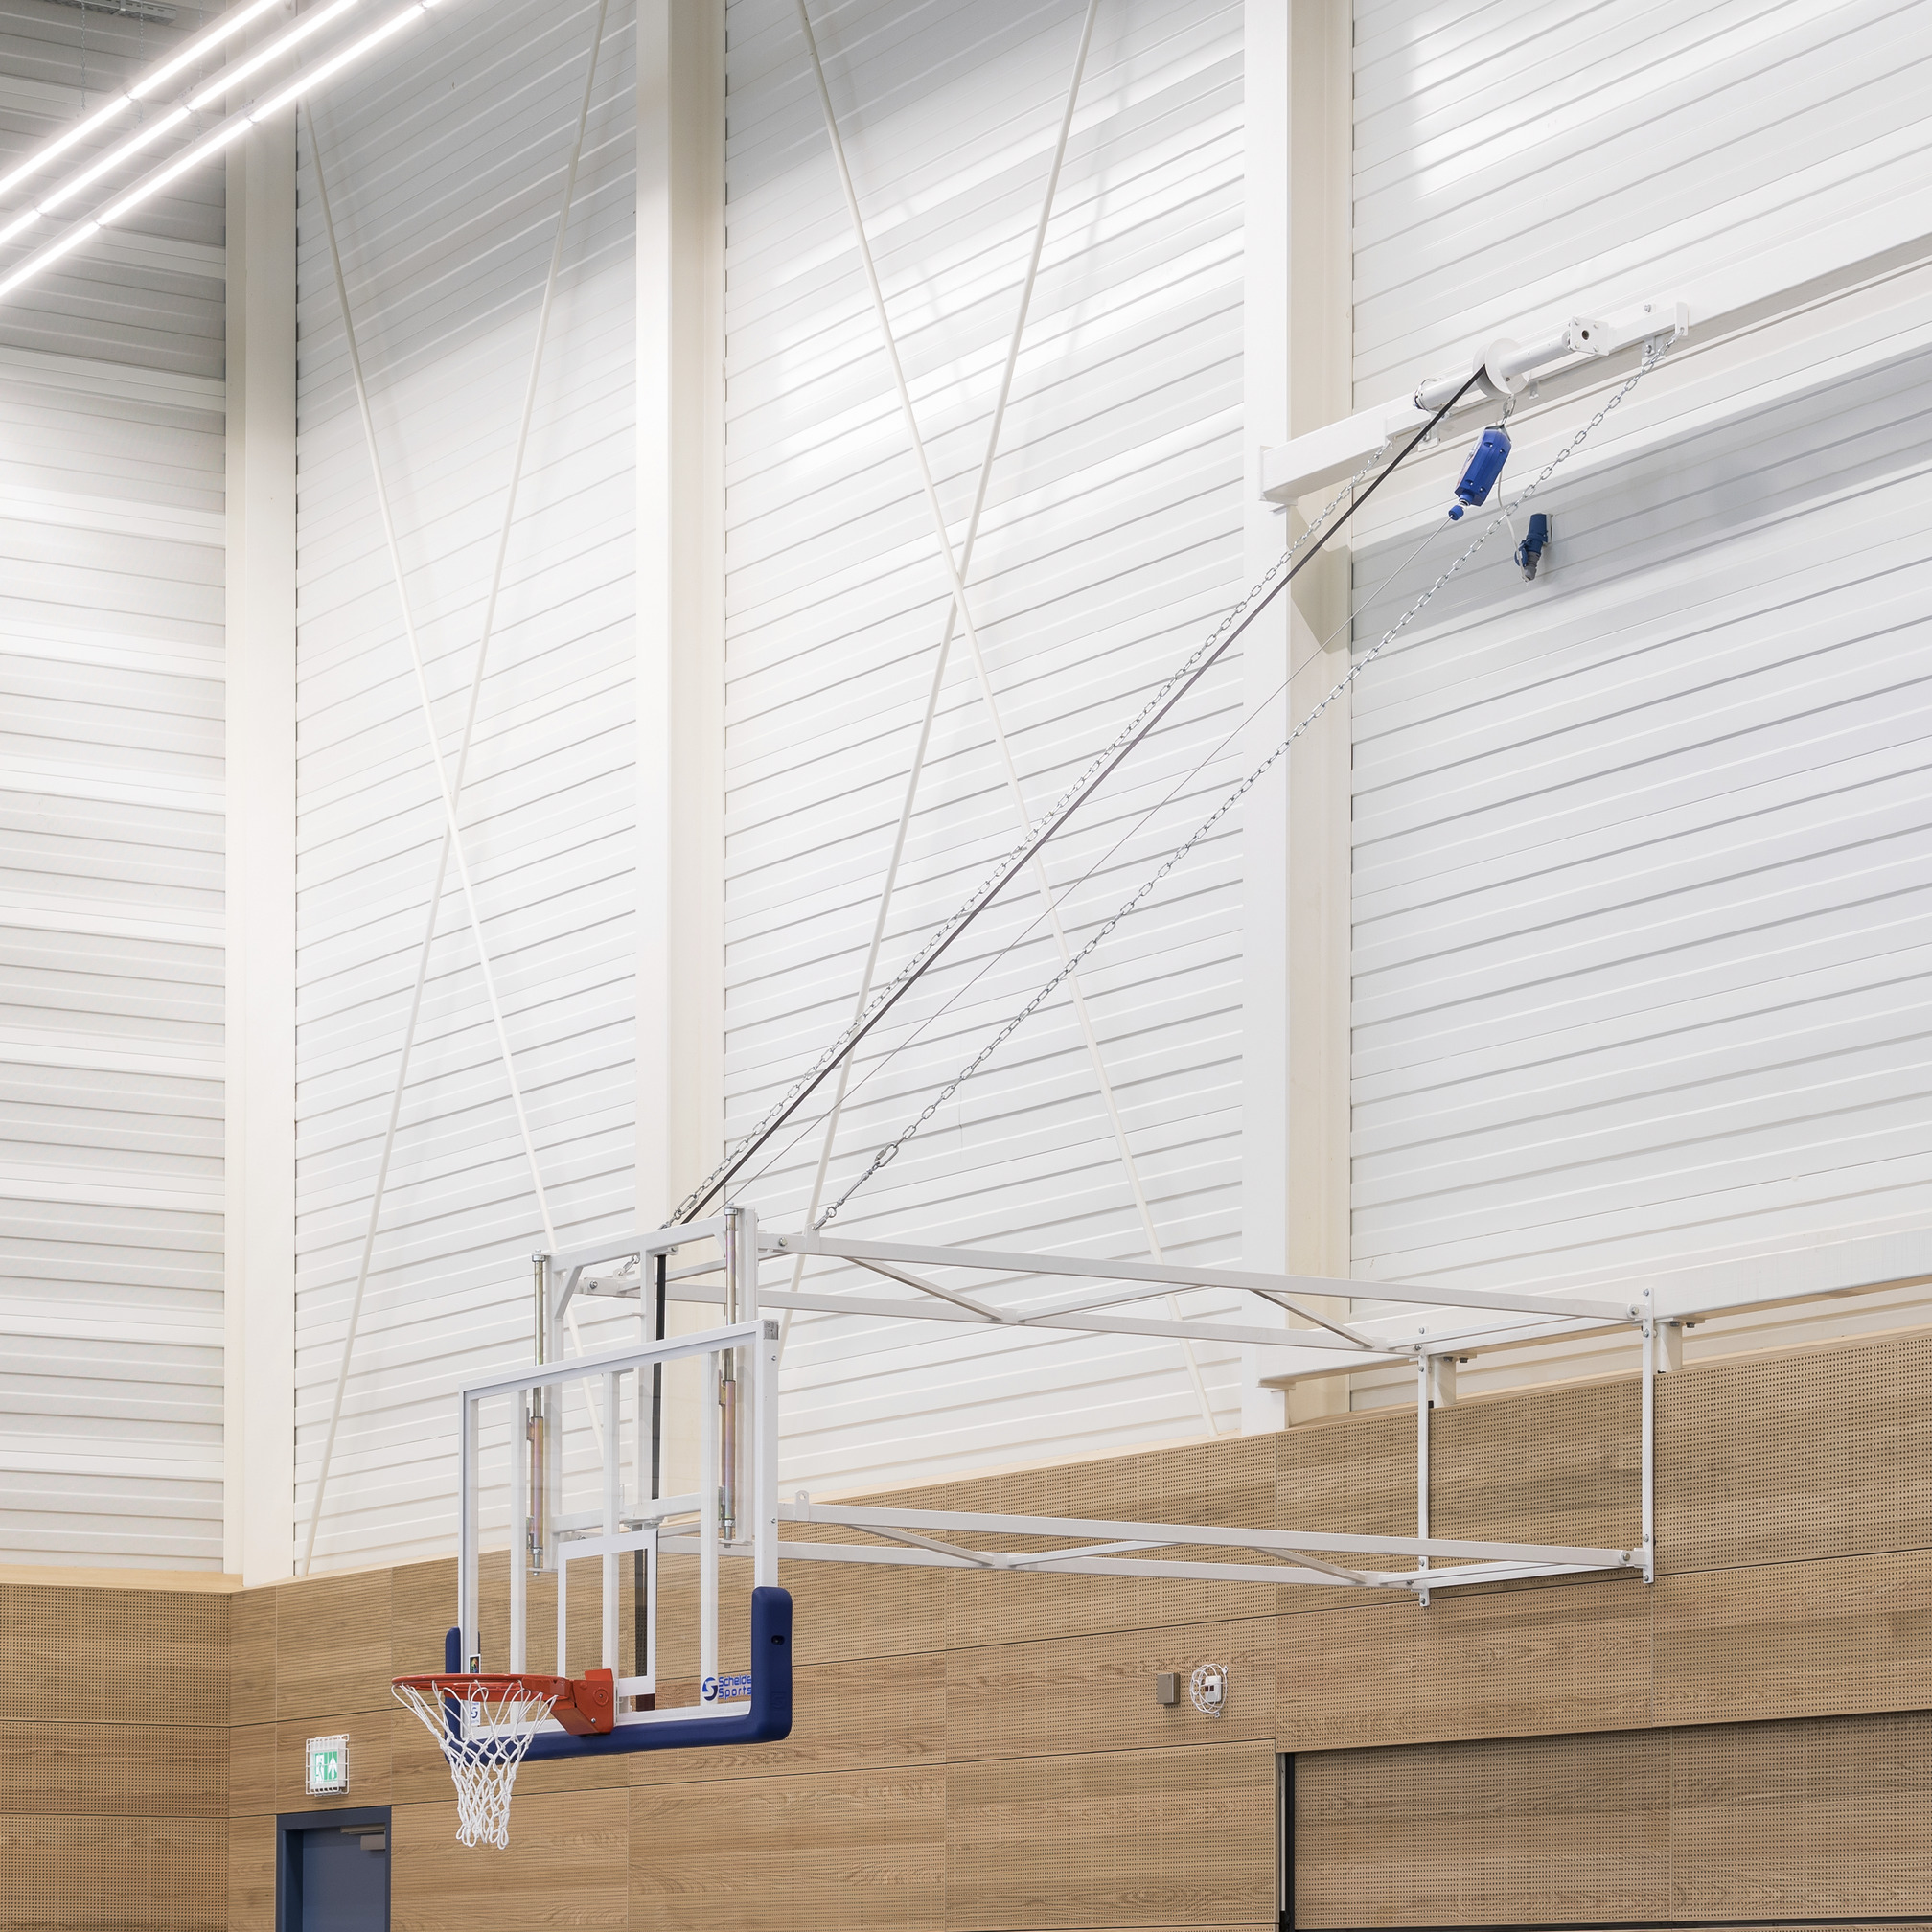 Basket elektrisch vertikaal ophijsbaar - uitval 225 cm - glazen veiligheidsbord - Pro 180° Equal Force Dunkring - voorzien van additionele extra valbeveiliging - geleverd en gemonteerd